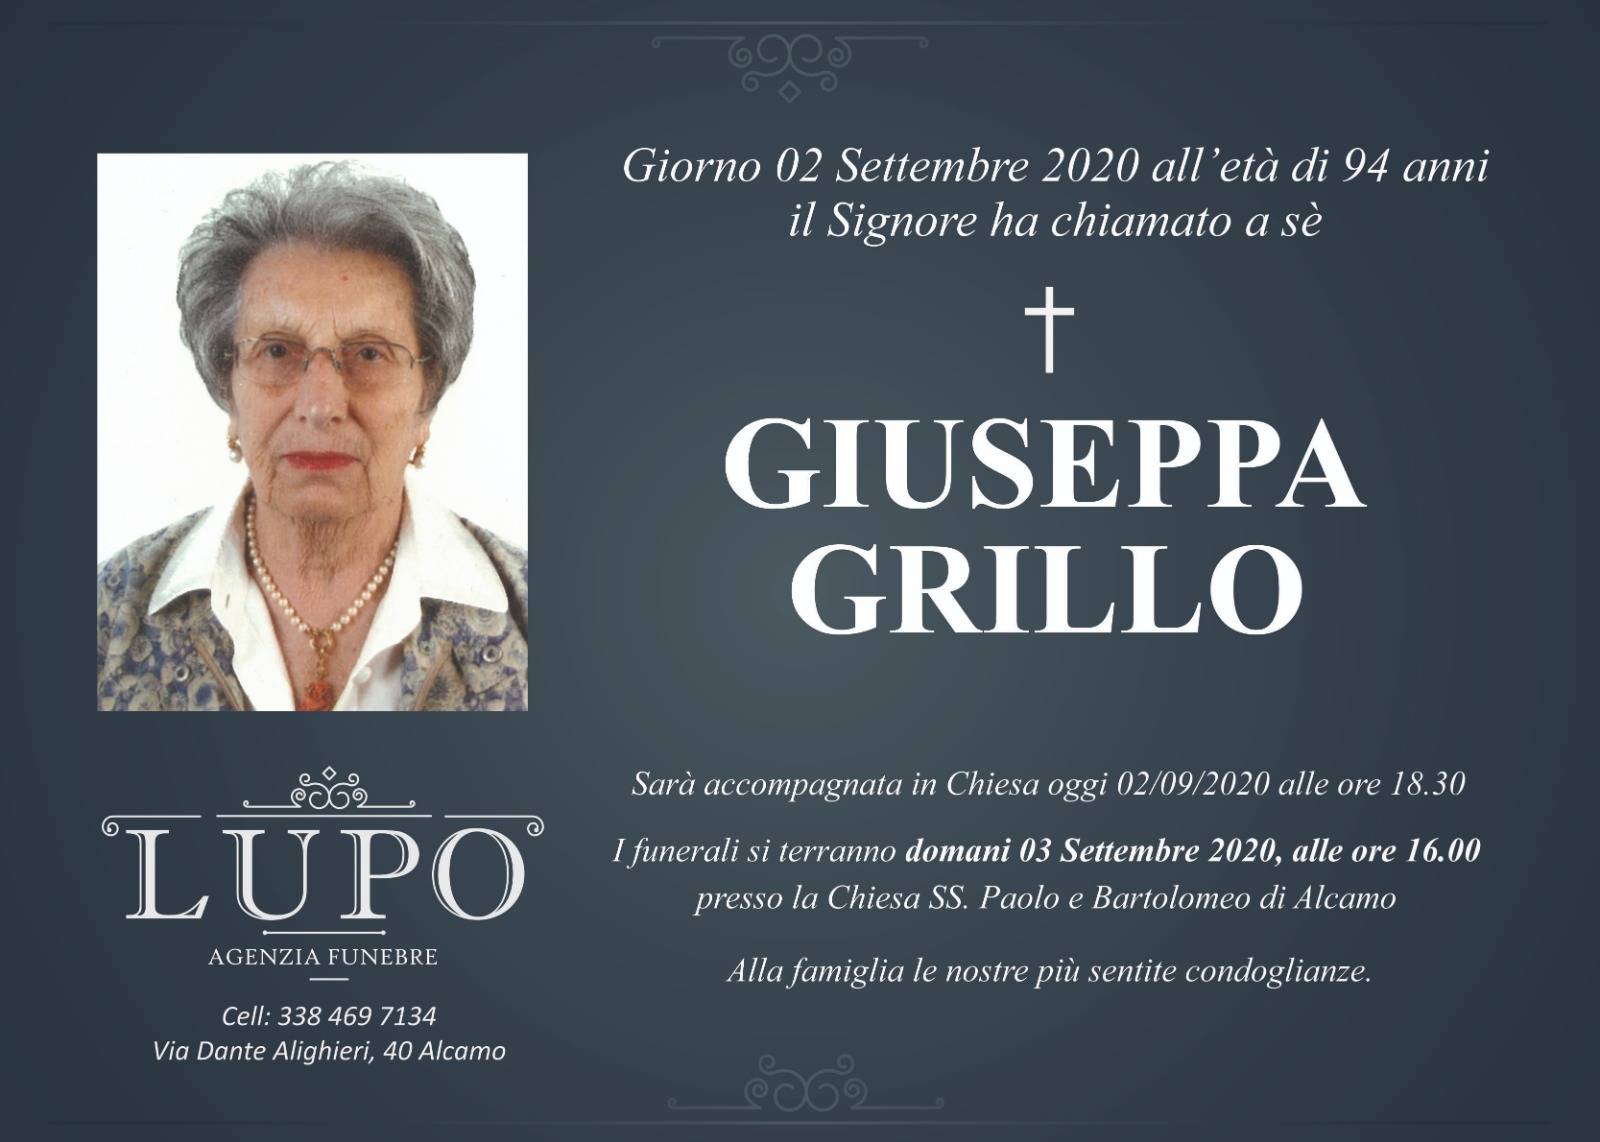 Giuseppa Grillo